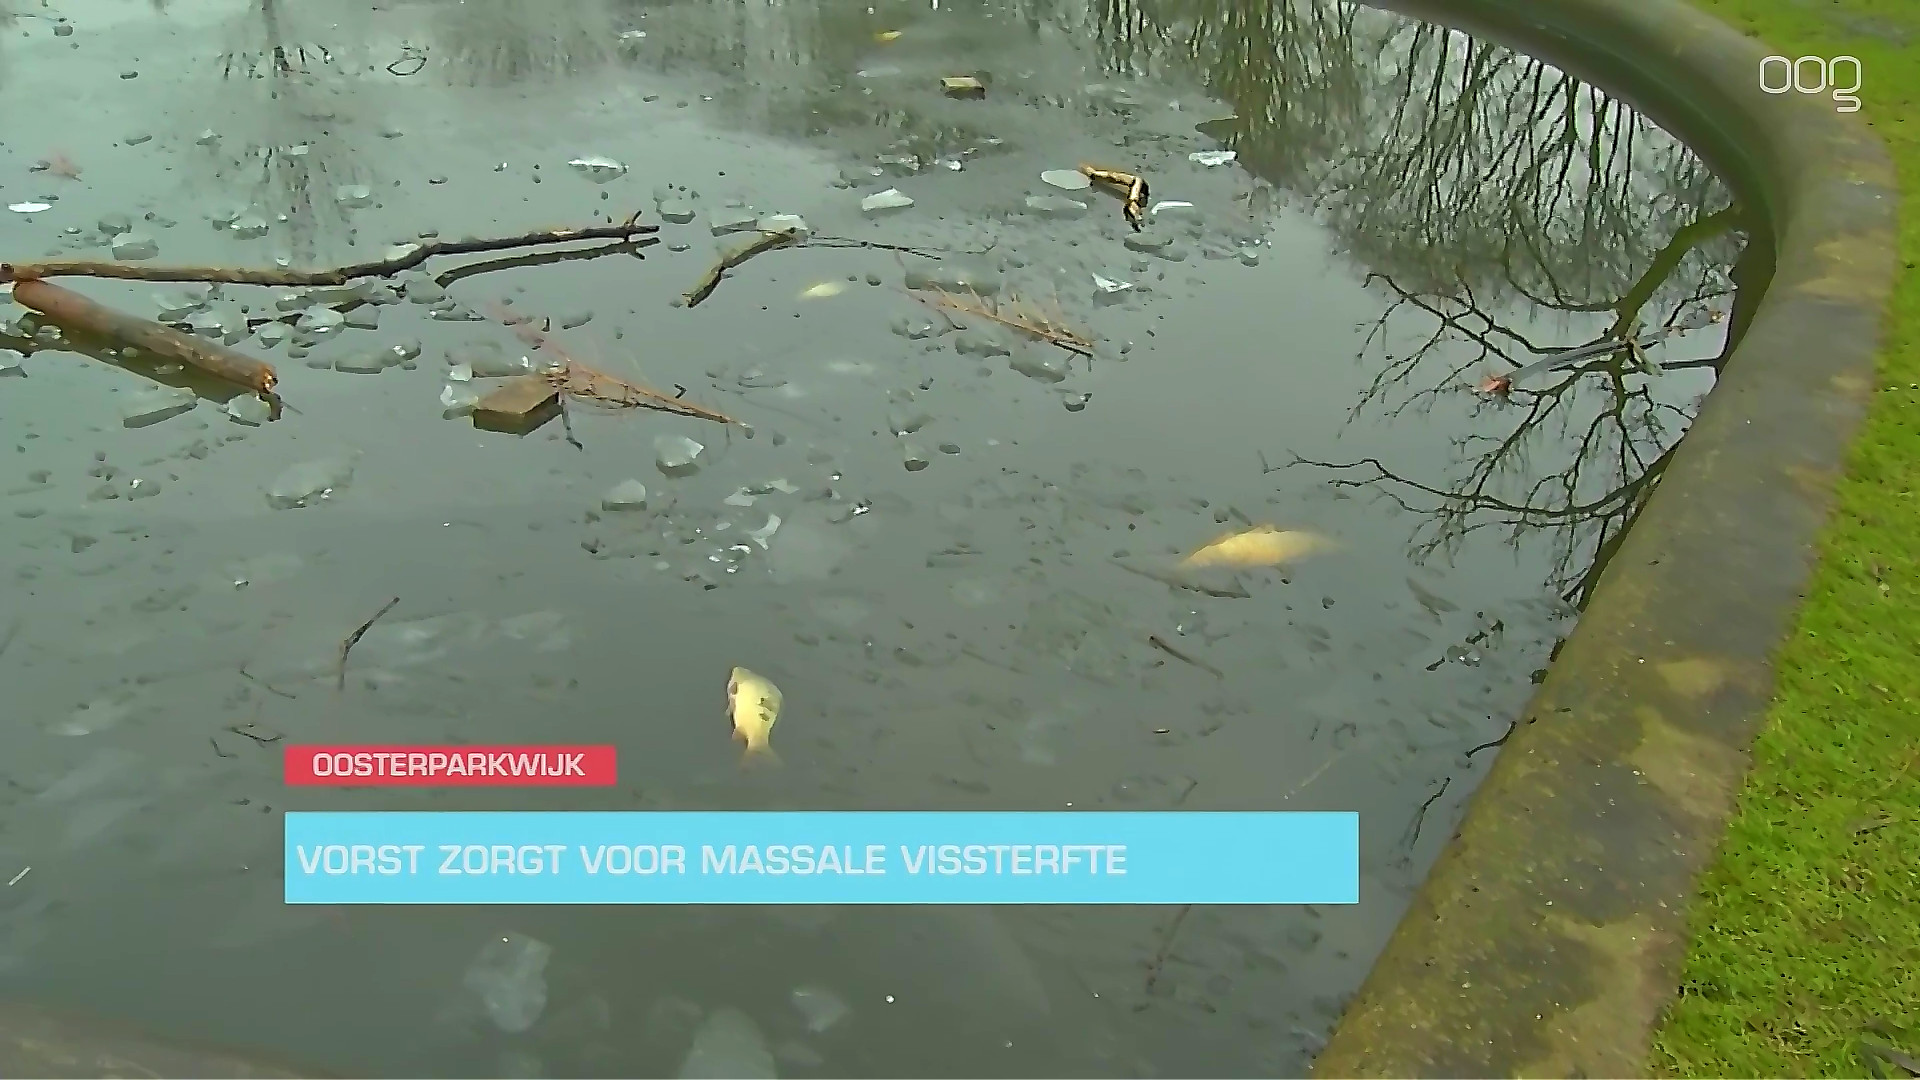 Vorst zorgt voor massale vissterfte in Oosterparkwijk - Oog TV